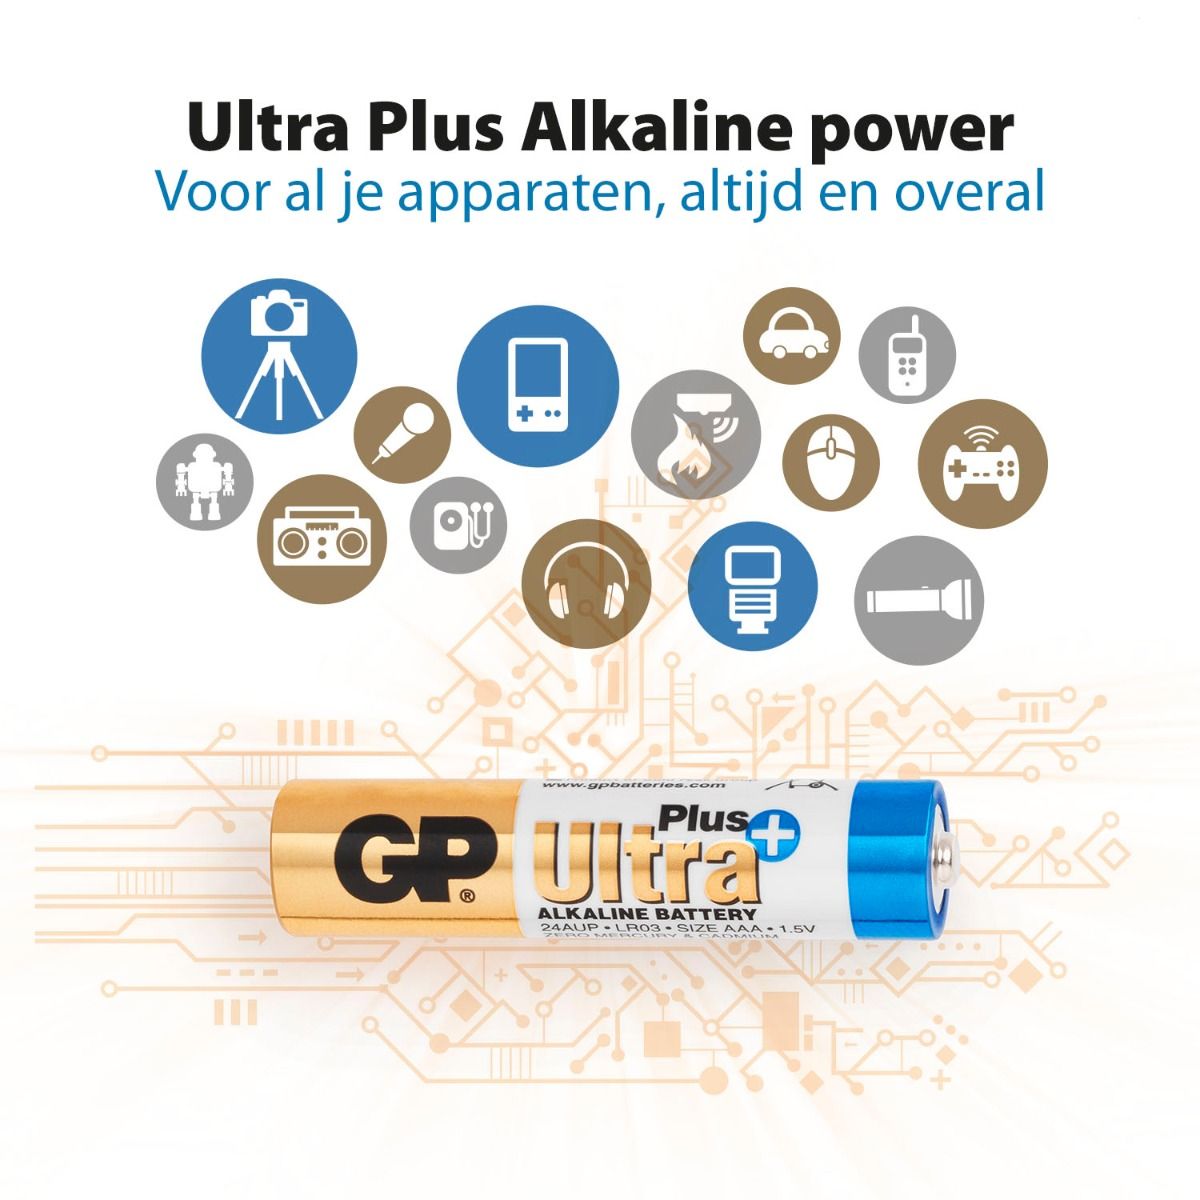 Ultra Plus Alkaline AAA - 4 batterijen apparaten